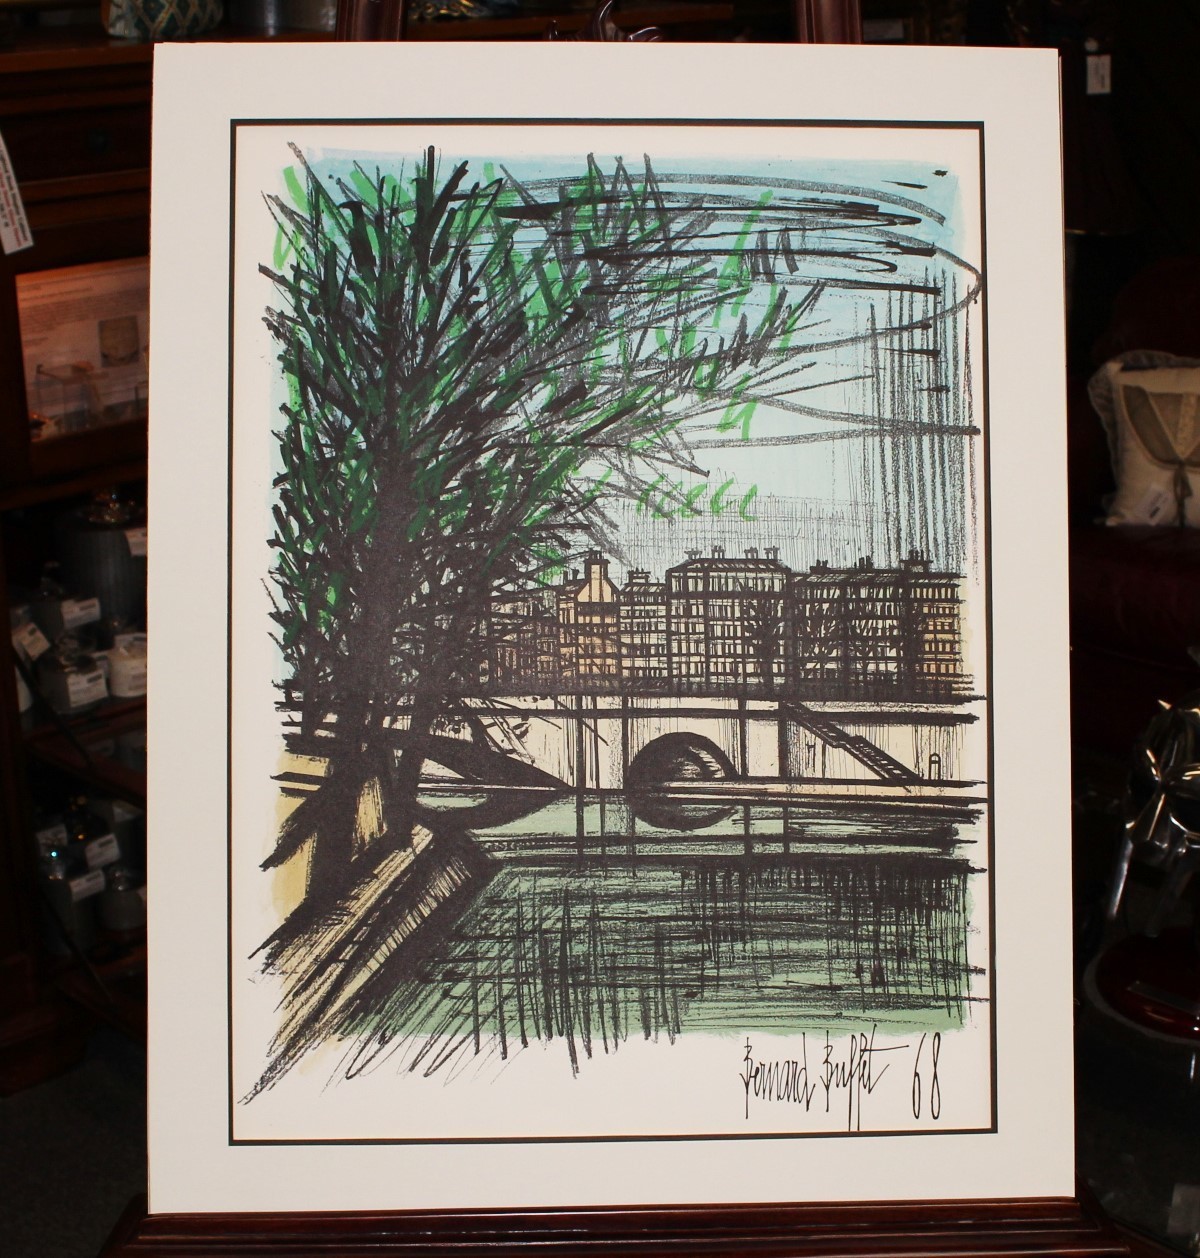 1968 Bernard Buffet “Canal St. Martin” Lithograph Art, Signed & Dated